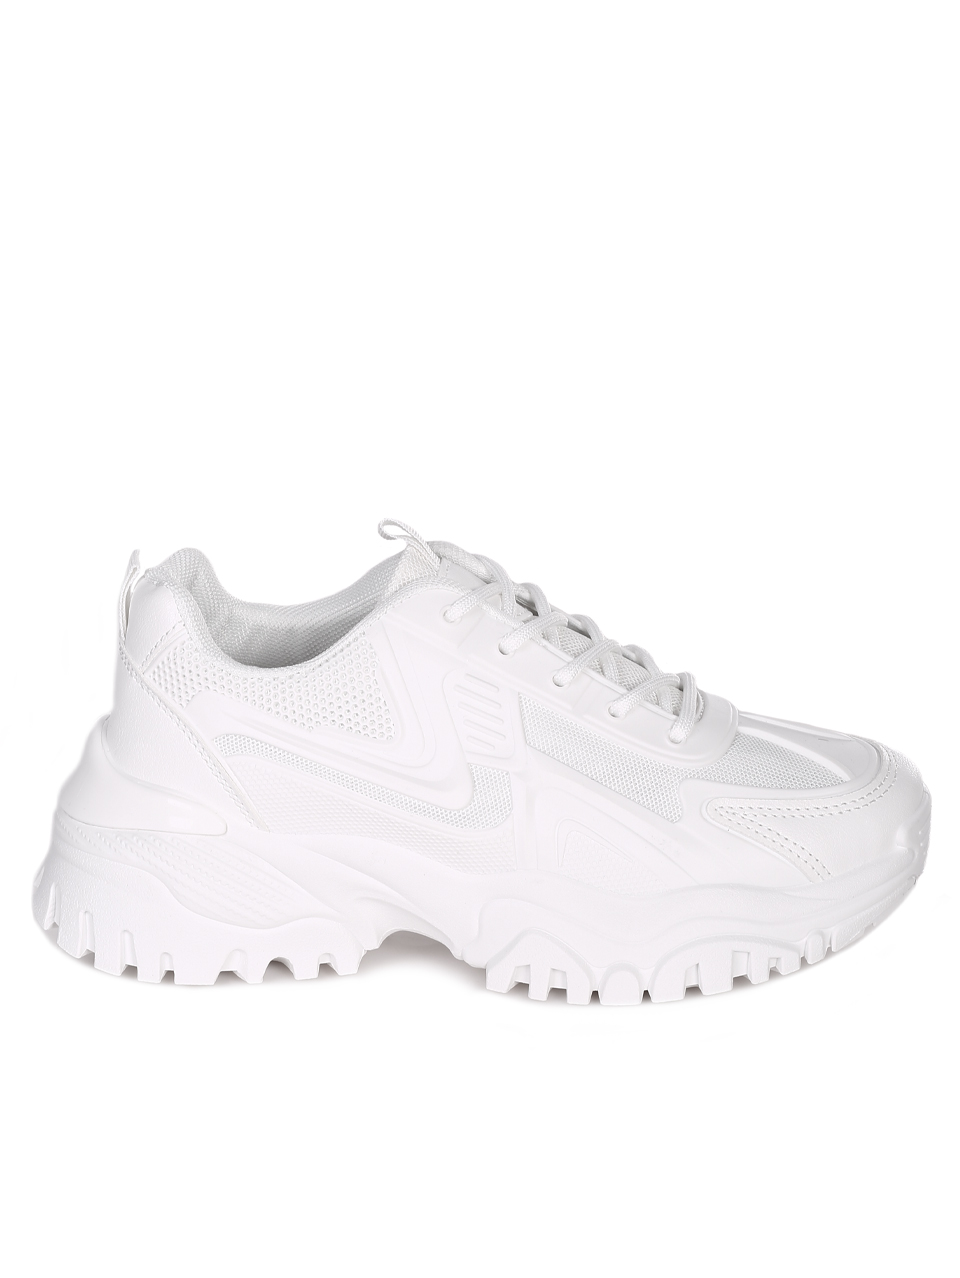 Ежедневни дамски обувки в бяло 3U-23565 white